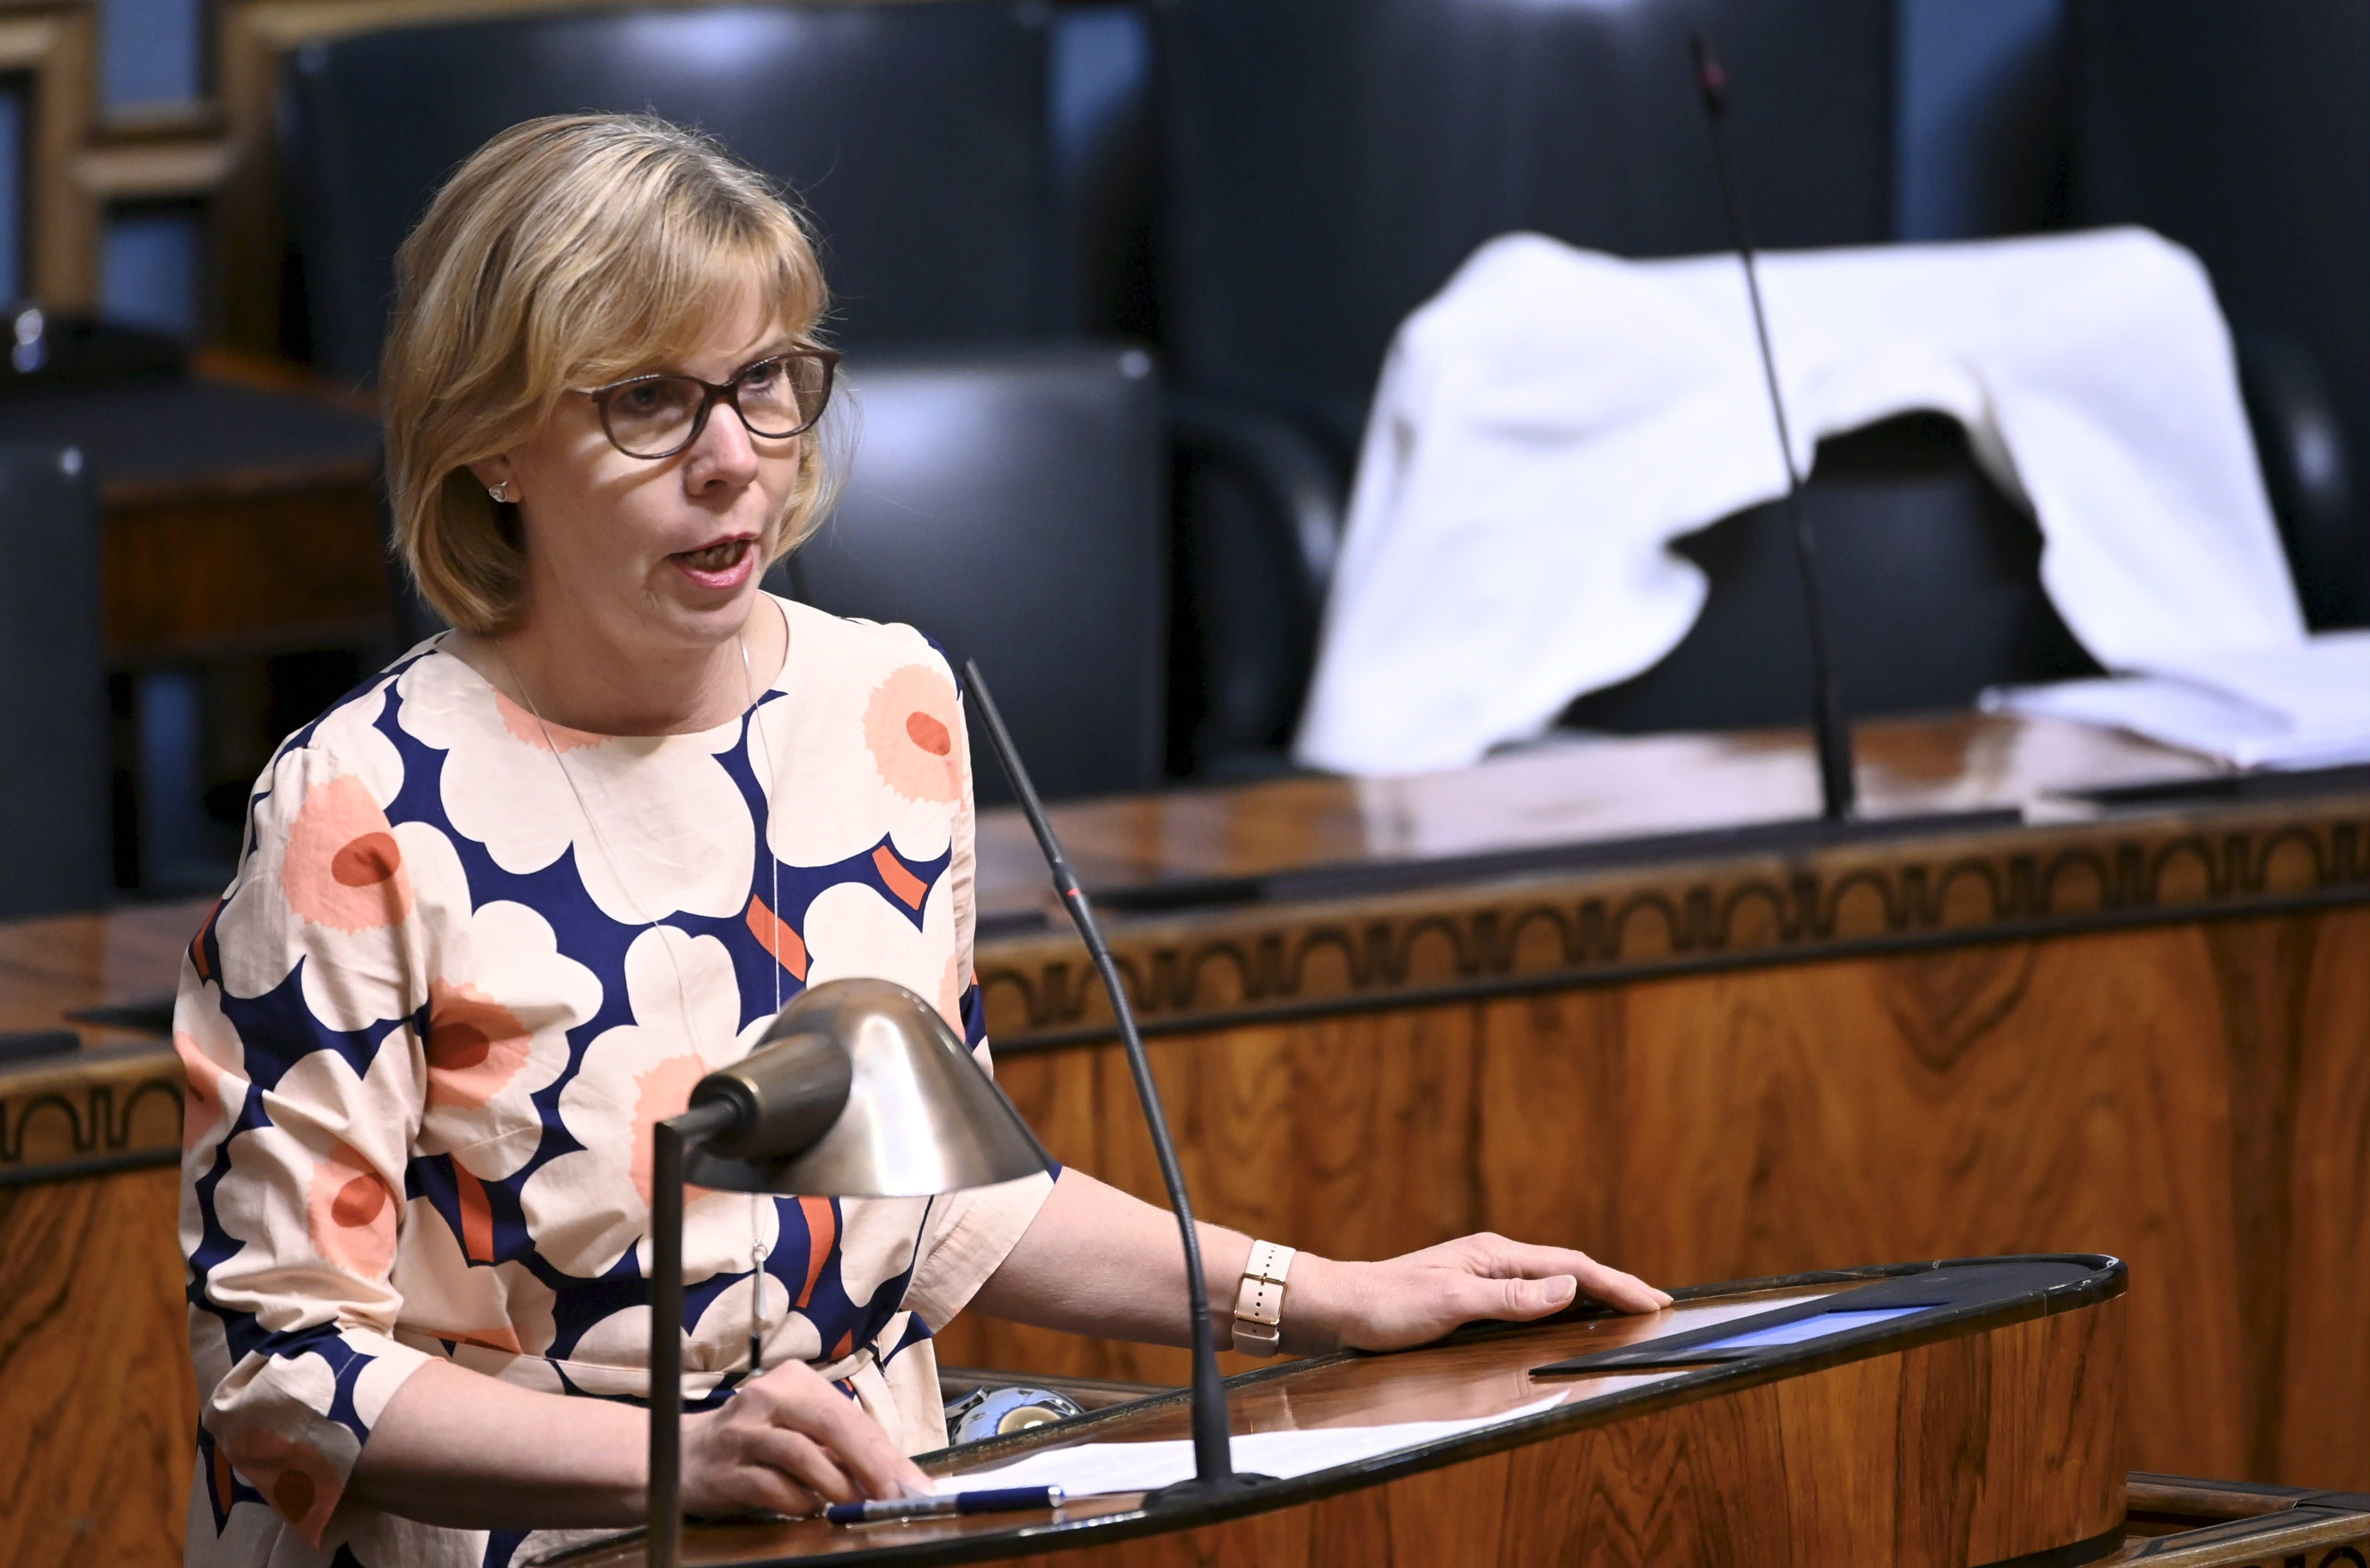 Finnland wird dieselben internationalen Auslieferungsabkommen einhalten, sagt der Justizminister